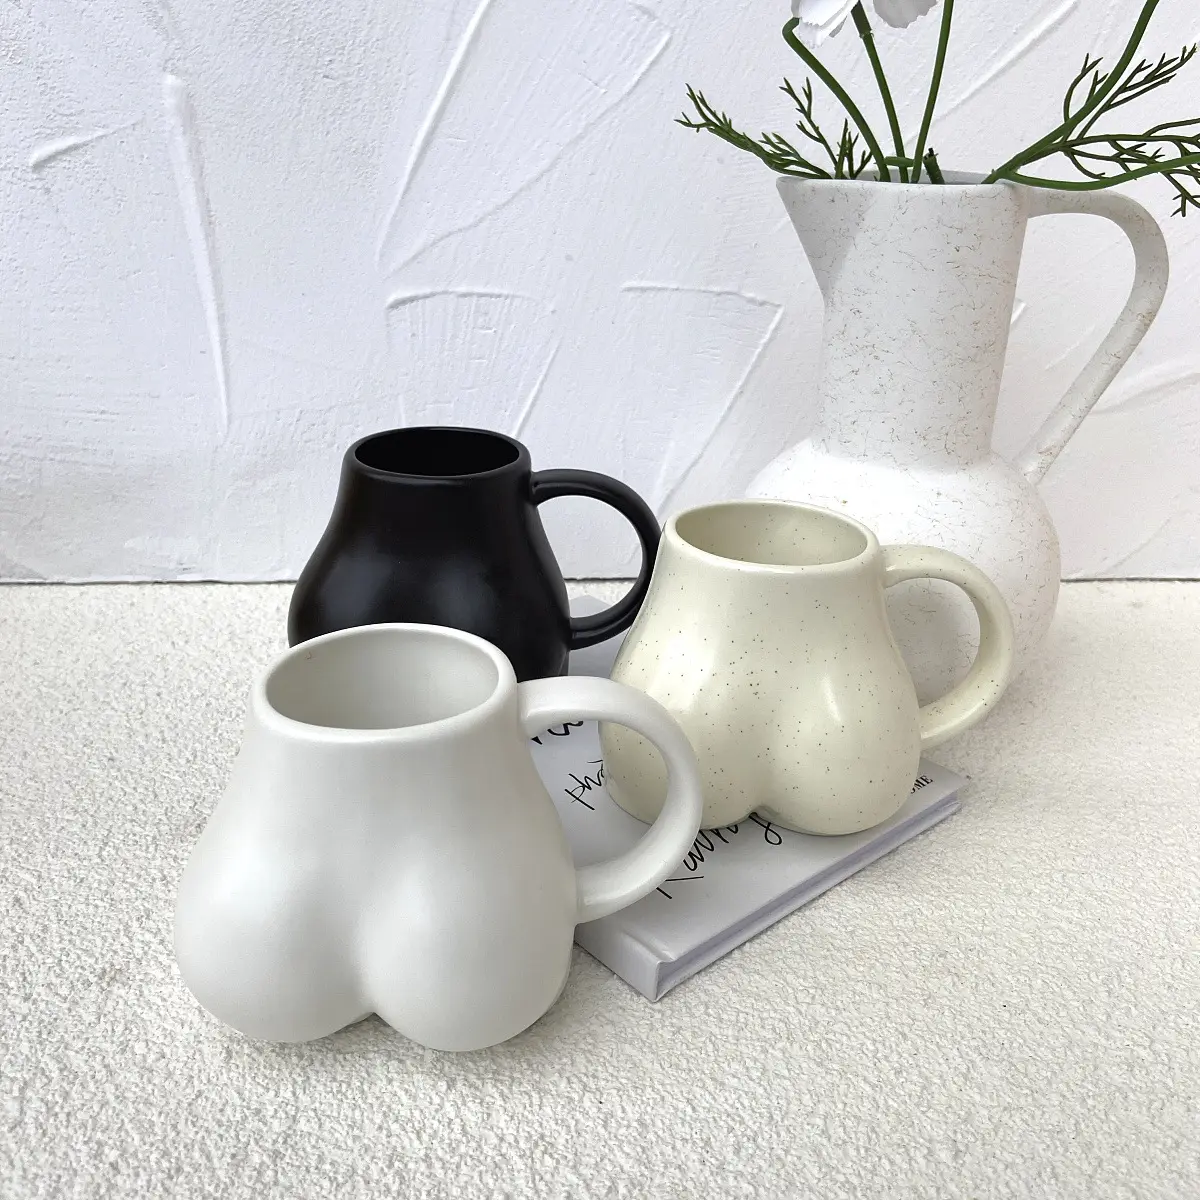 الإبداعي للاهتمام بسيط و جميل سطح المكتب الديكور السيراميك بعقب كوب لشرب القهوة